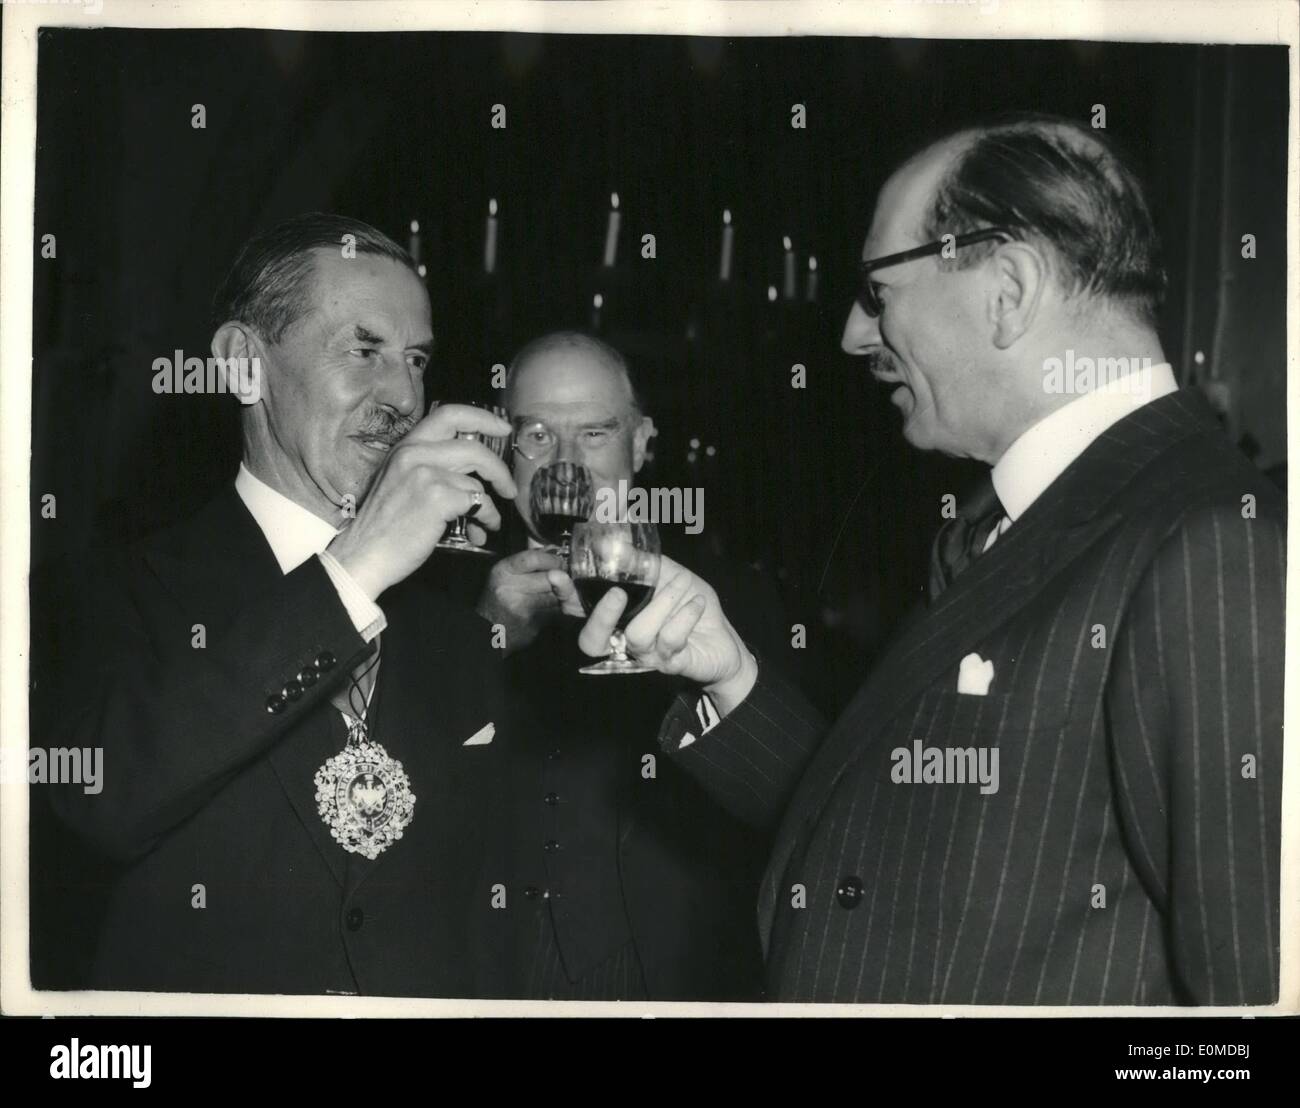 10 octobre 1954 - dégustation annuelle de vins français : Photo montre Le Lord Maire de Londres, Sir Noel Bowater, et M. Massigli, ambassadeur français à Londres, boire de la santé sur le lieu de dégustation de vin dans les caves de Lebegue & Co., London. Banque D'Images